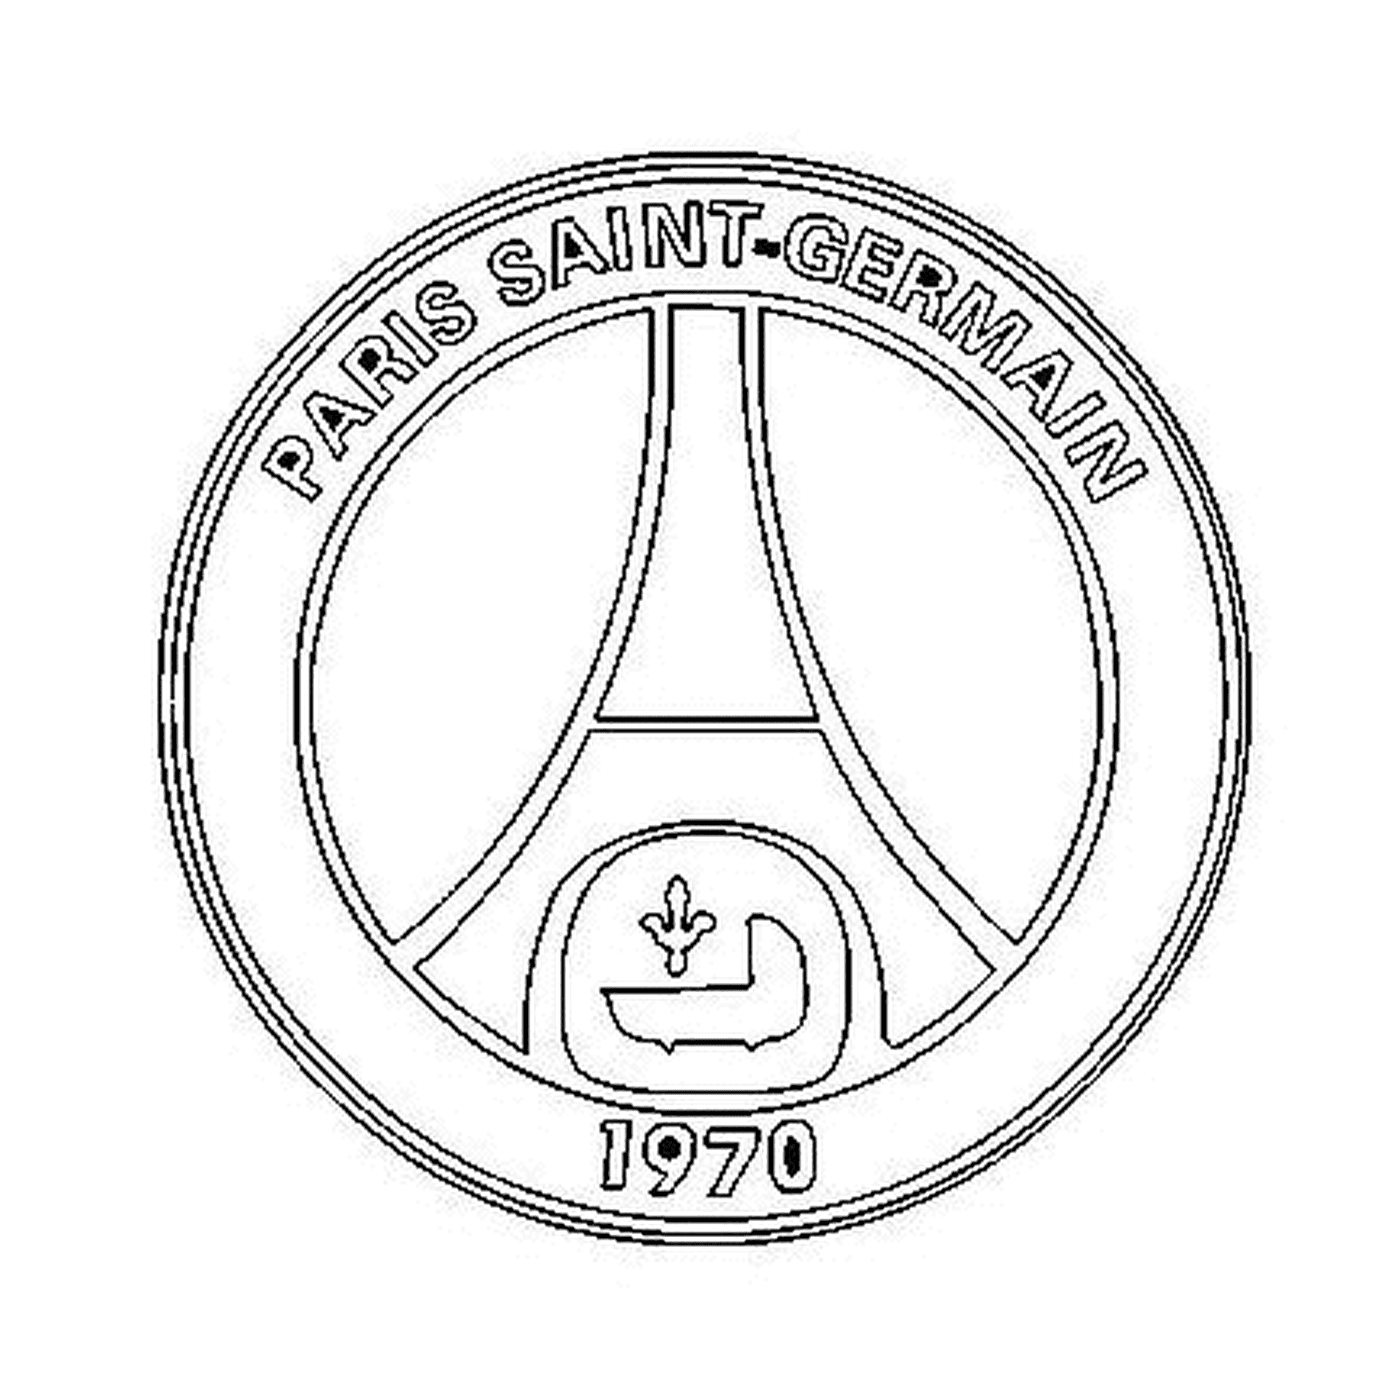  Logo von Paris Saint-Germain 